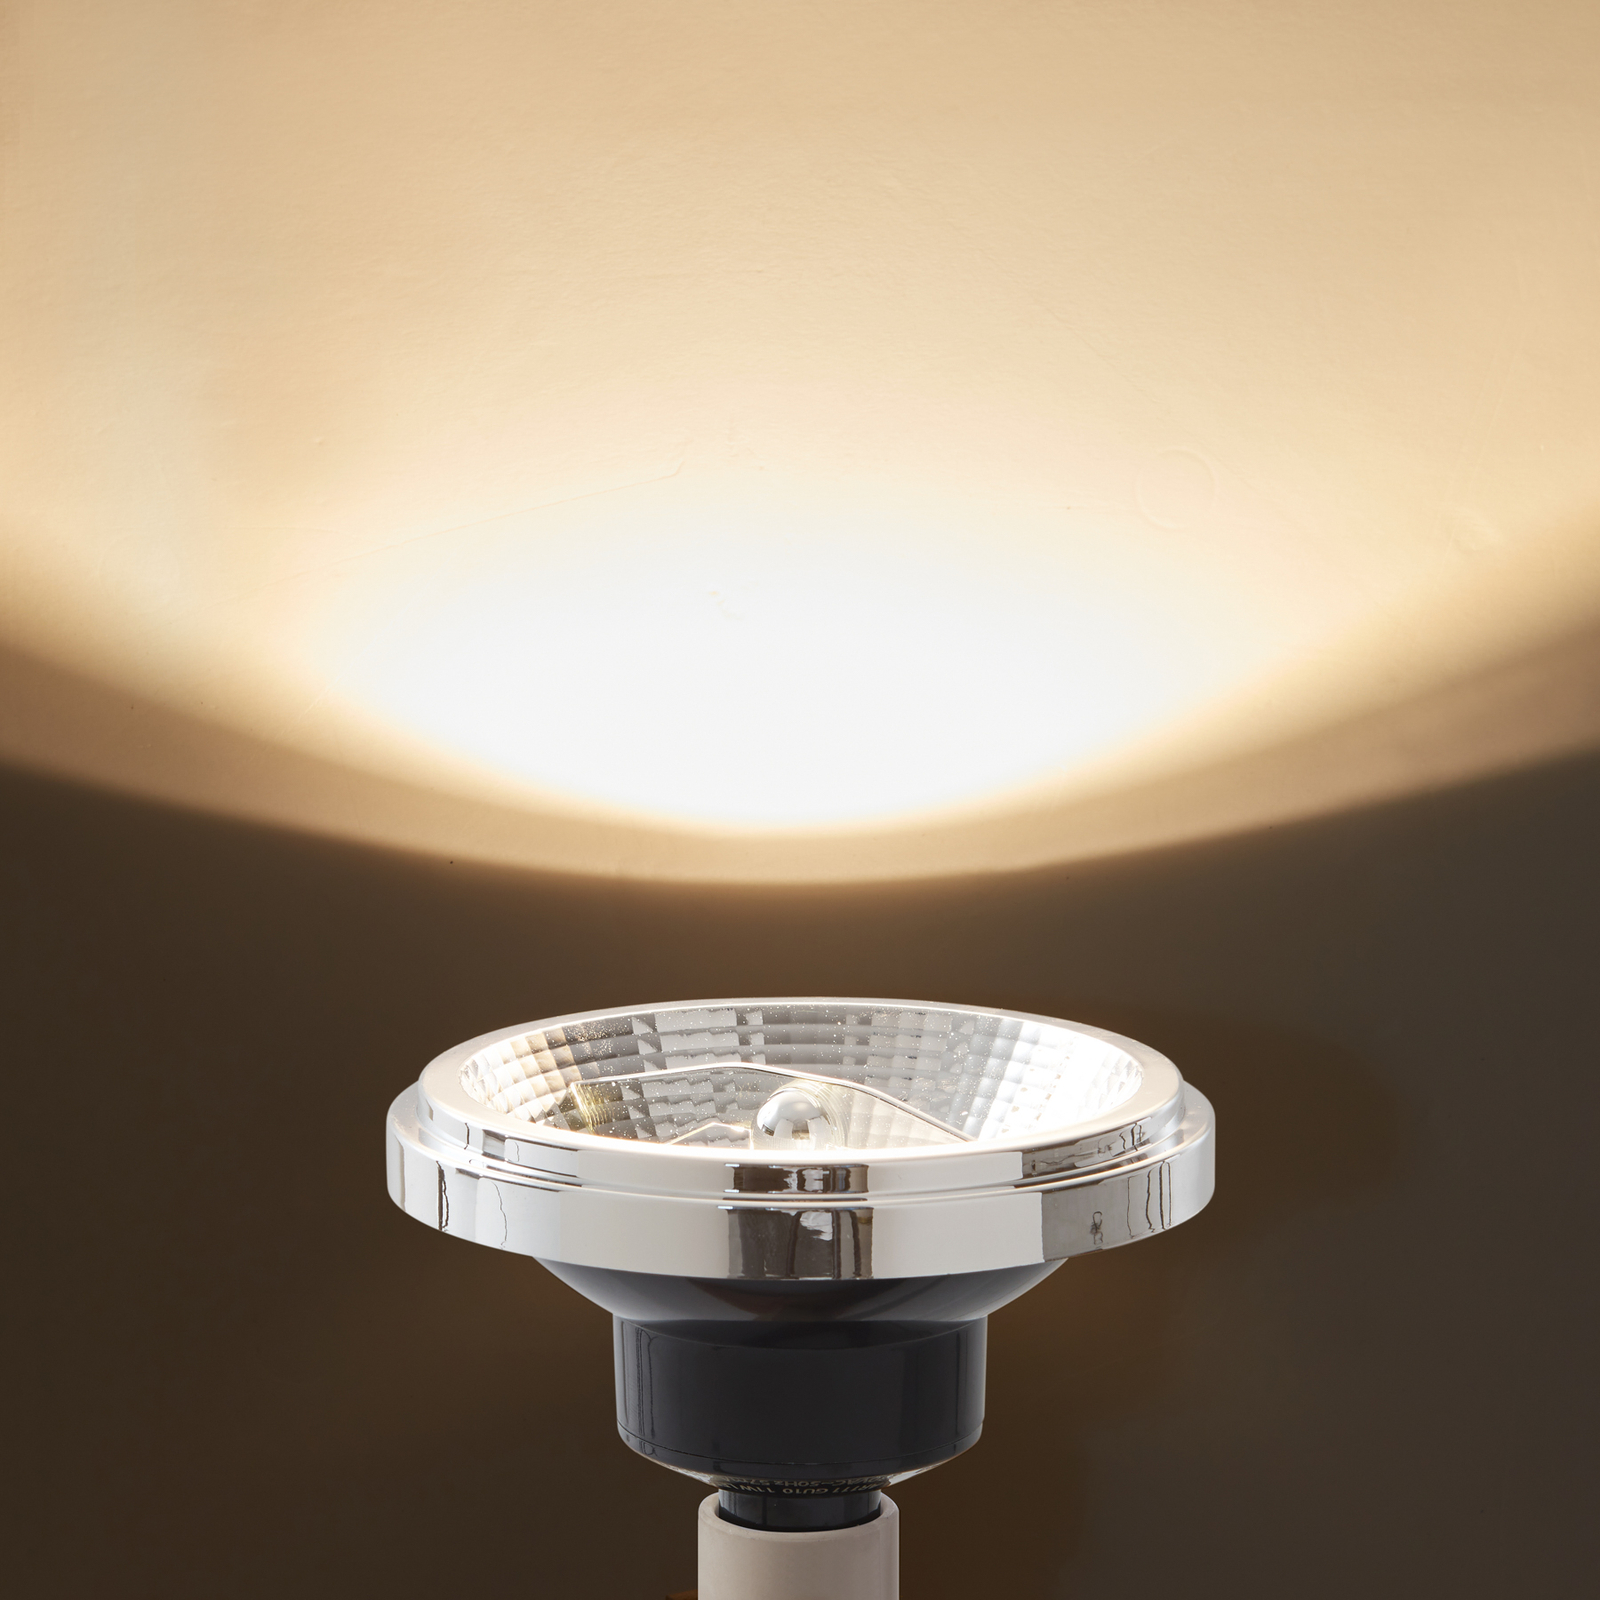 Arcchio LED-Lampe GU10 ES111 11W 3.000K Dim-to-warm